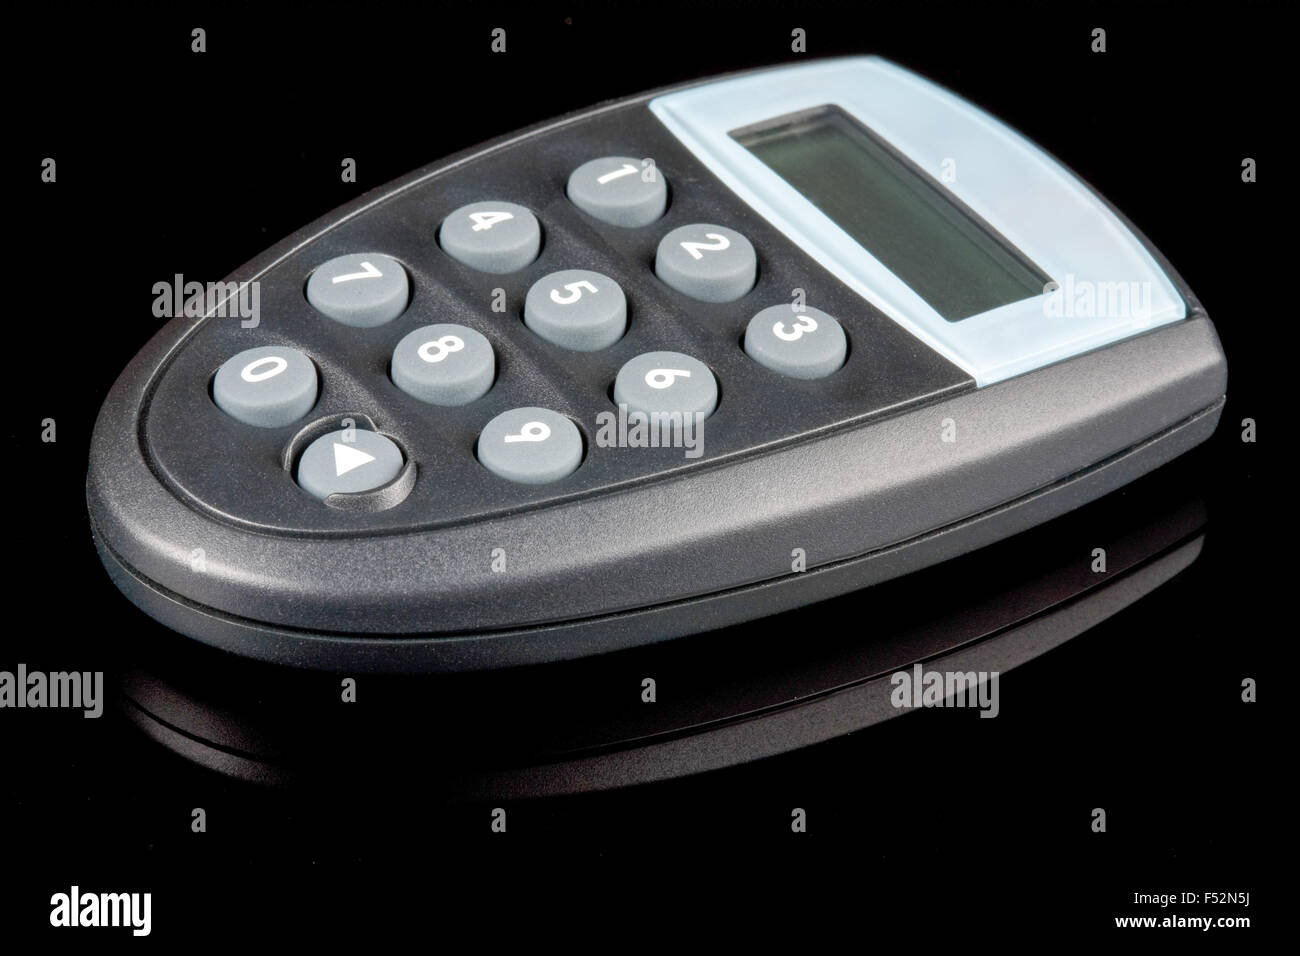 Petit générateur de mot de passe électronique utilisé pour les services bancaires et sécurité du commerce électronique Banque D'Images